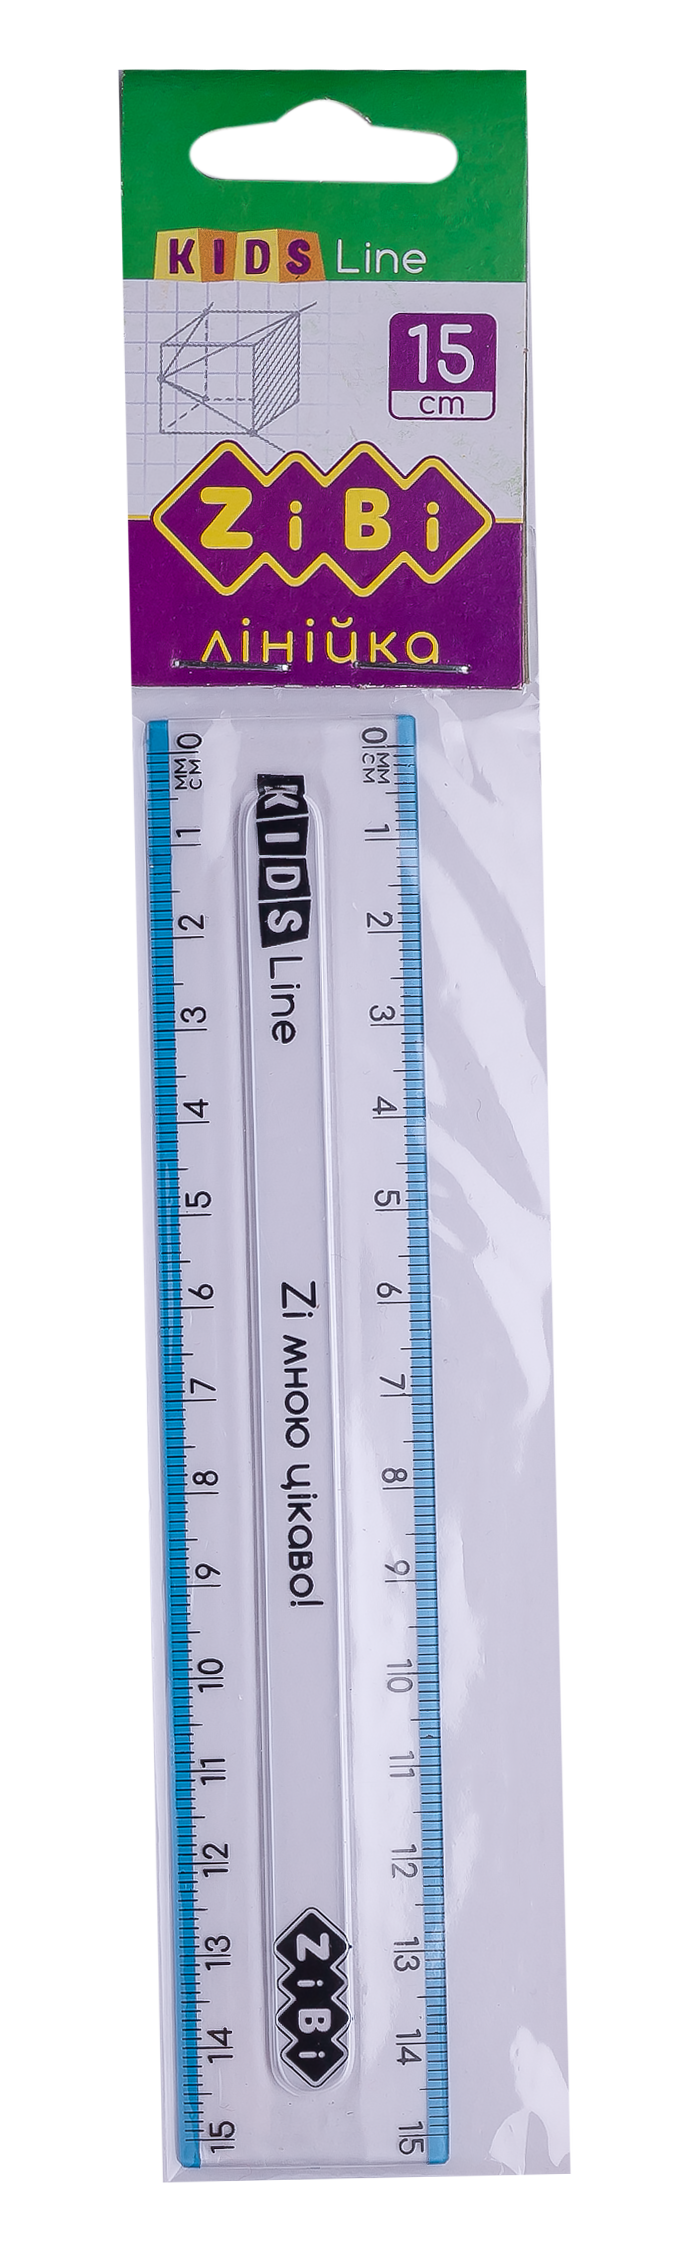 Линейка пластиковая 15 см ZiBi KIDS Line, с голубой полоской